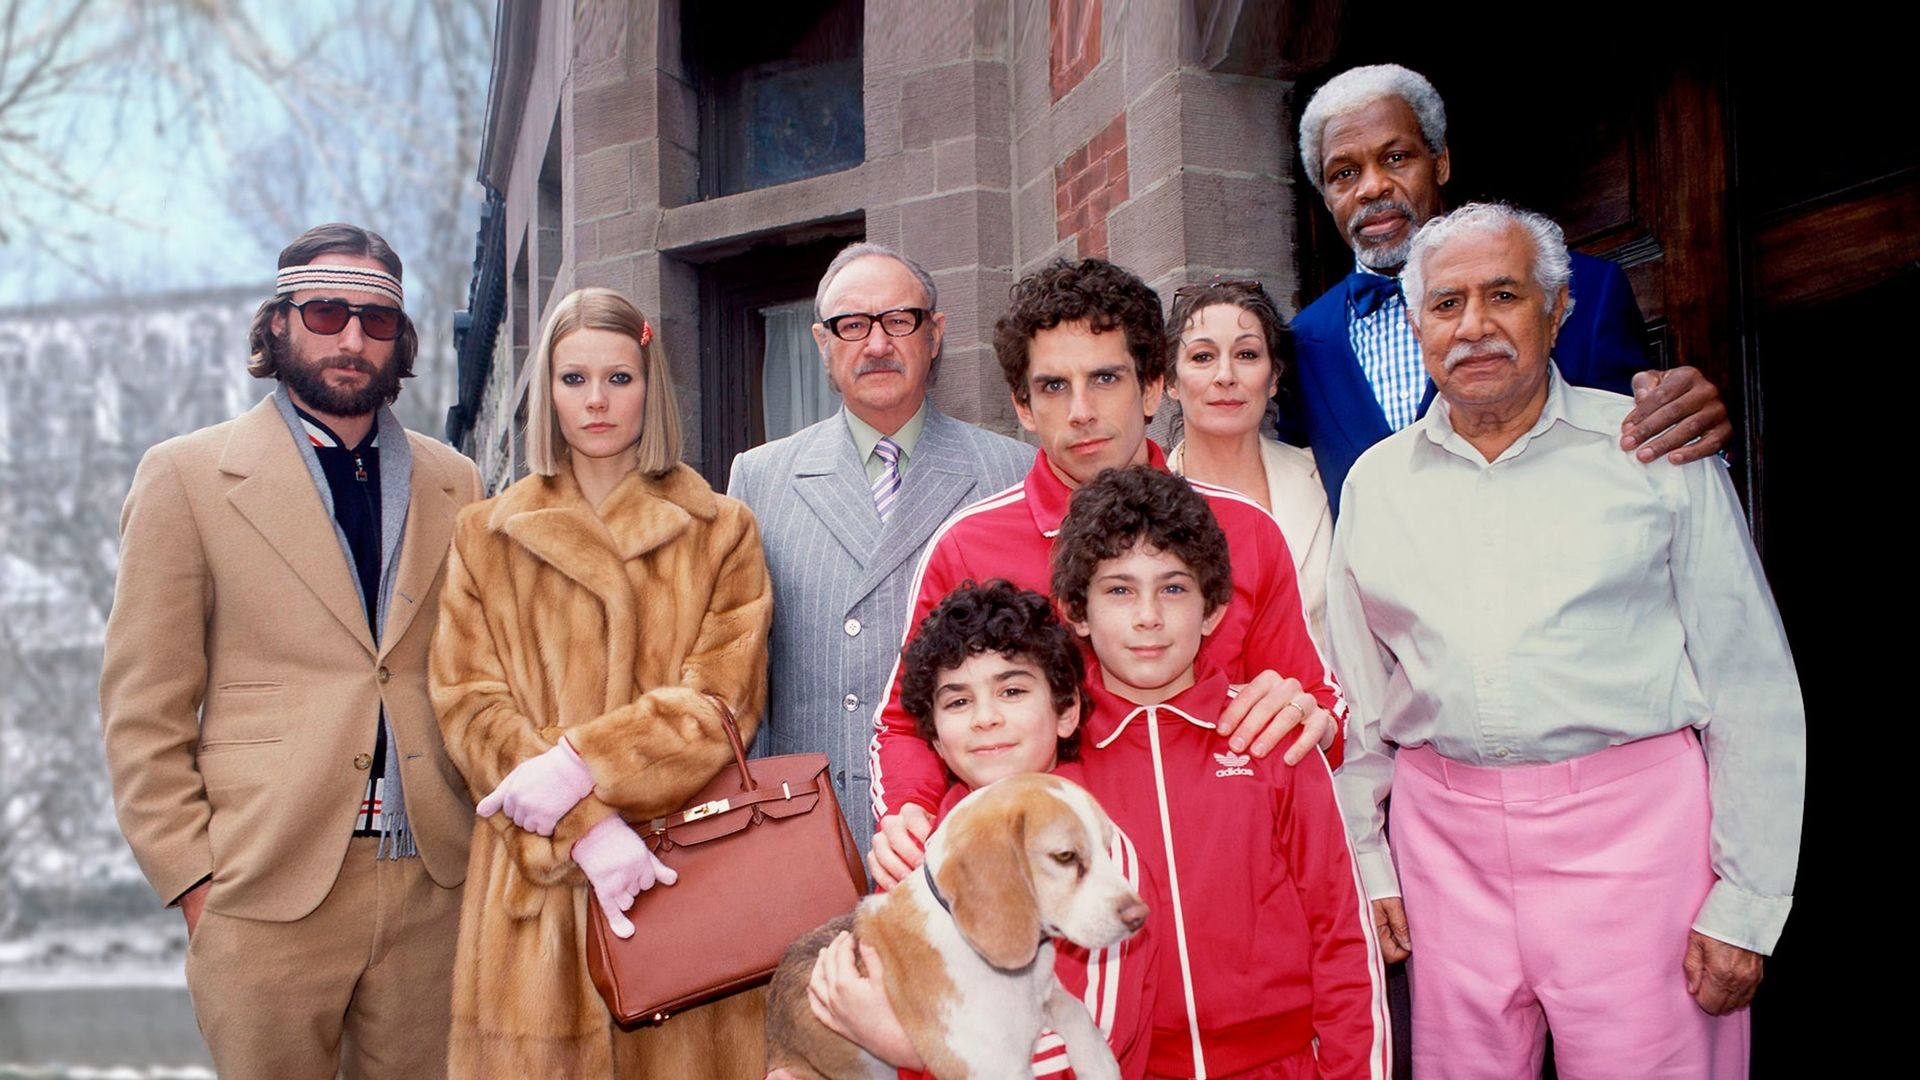 Этот день в истории кино: 21 год назад вышел фильм «Семейка Тененбаум» Уэса Андерсона